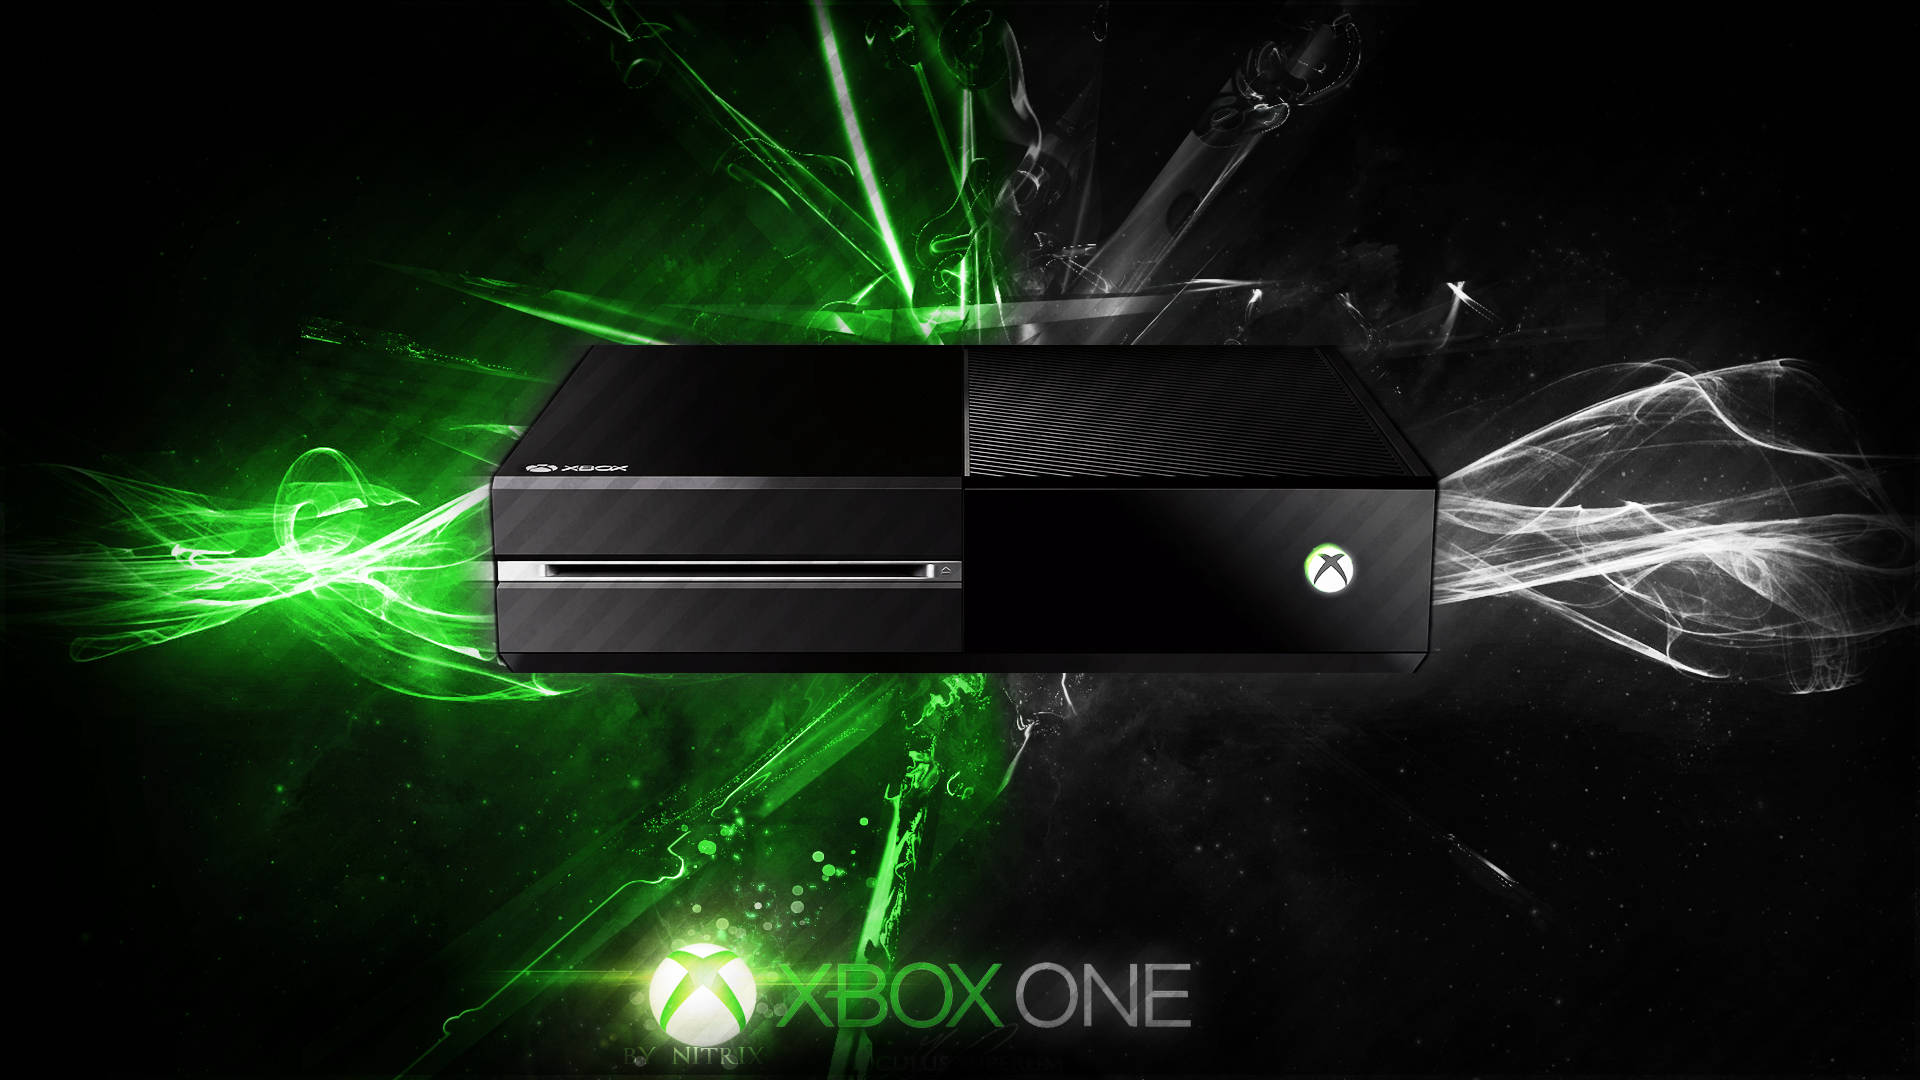 Xbox One Xbox One Xbox One Xbox One Xbox One Xbox One Xbox One Xbox One Wallpaper